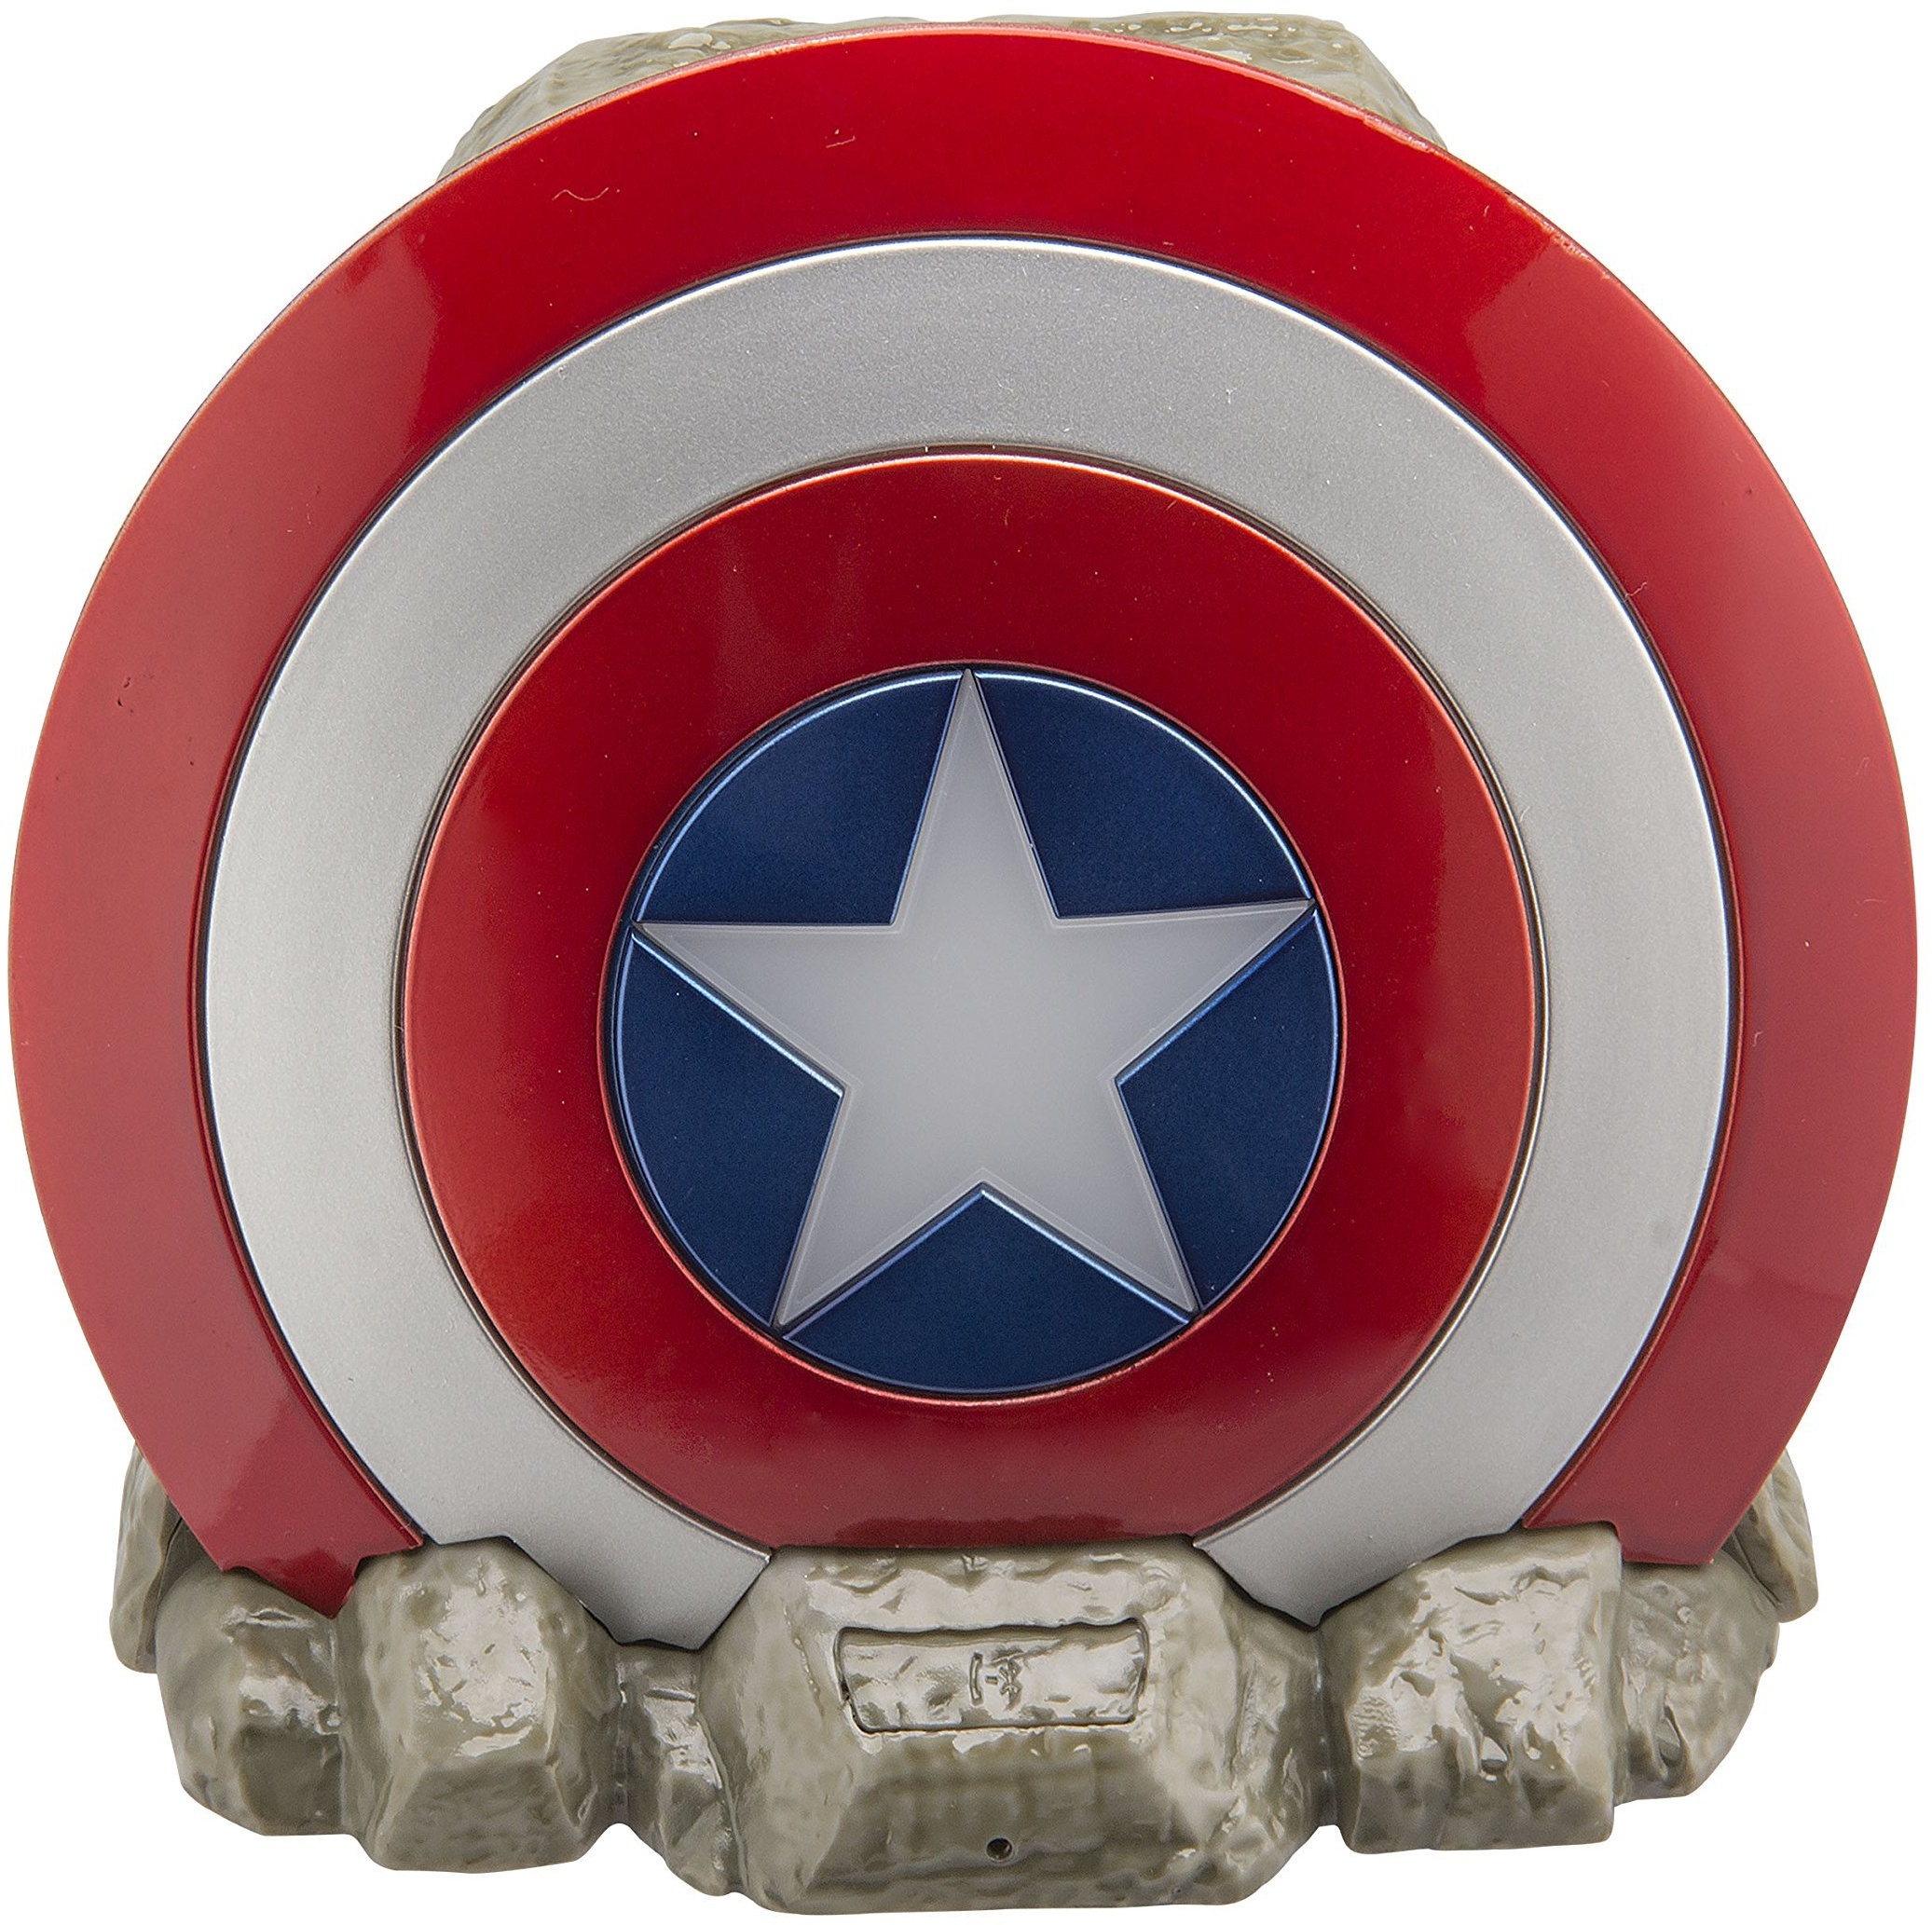 ekids Vi-B72CA Marvel Captain America Schild Bluetooth Wireless Lautsprecher tragbar rot/weiß